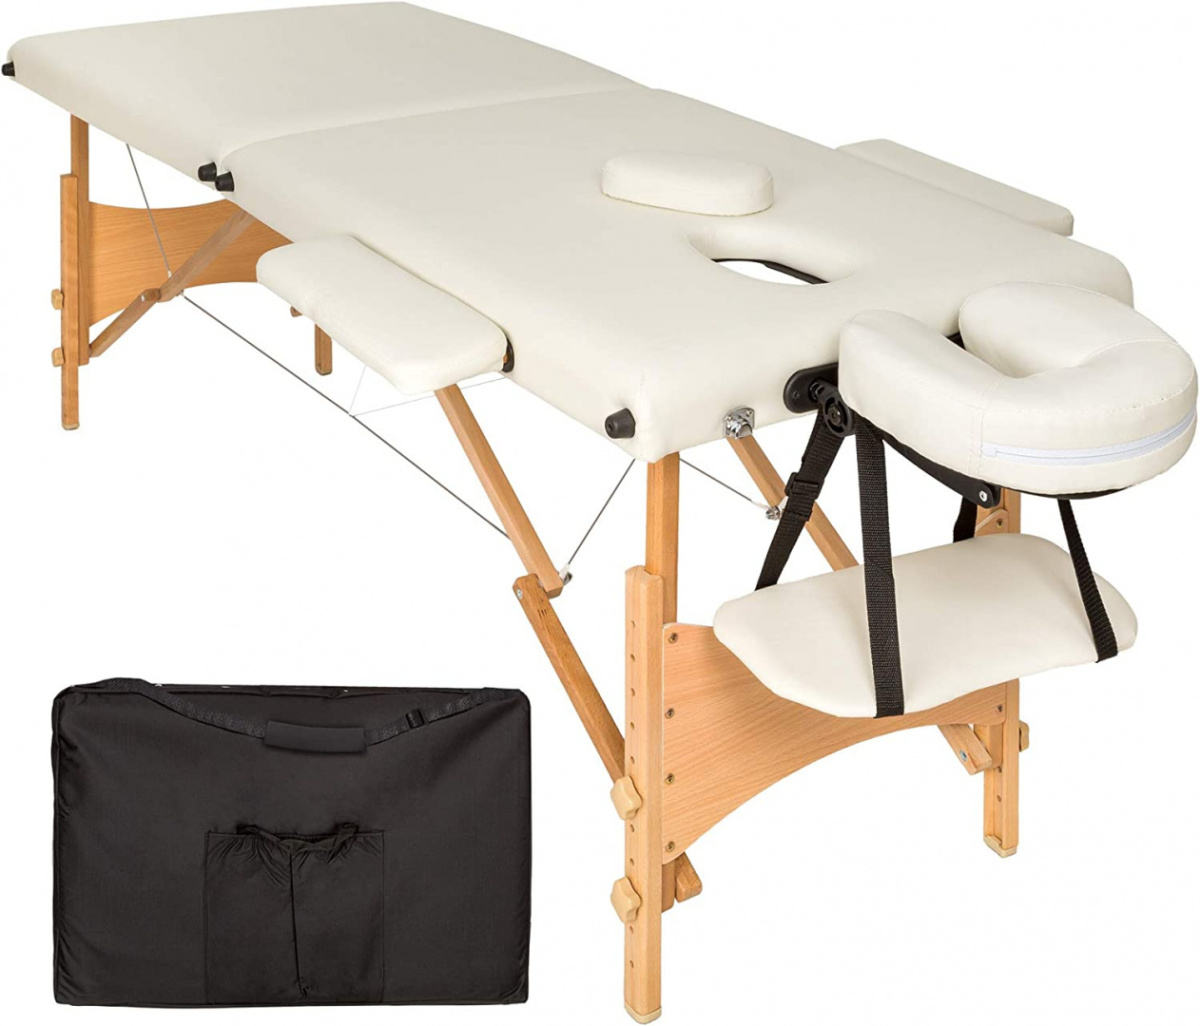 Stół do masażu składany Drewno Naipo łóżko